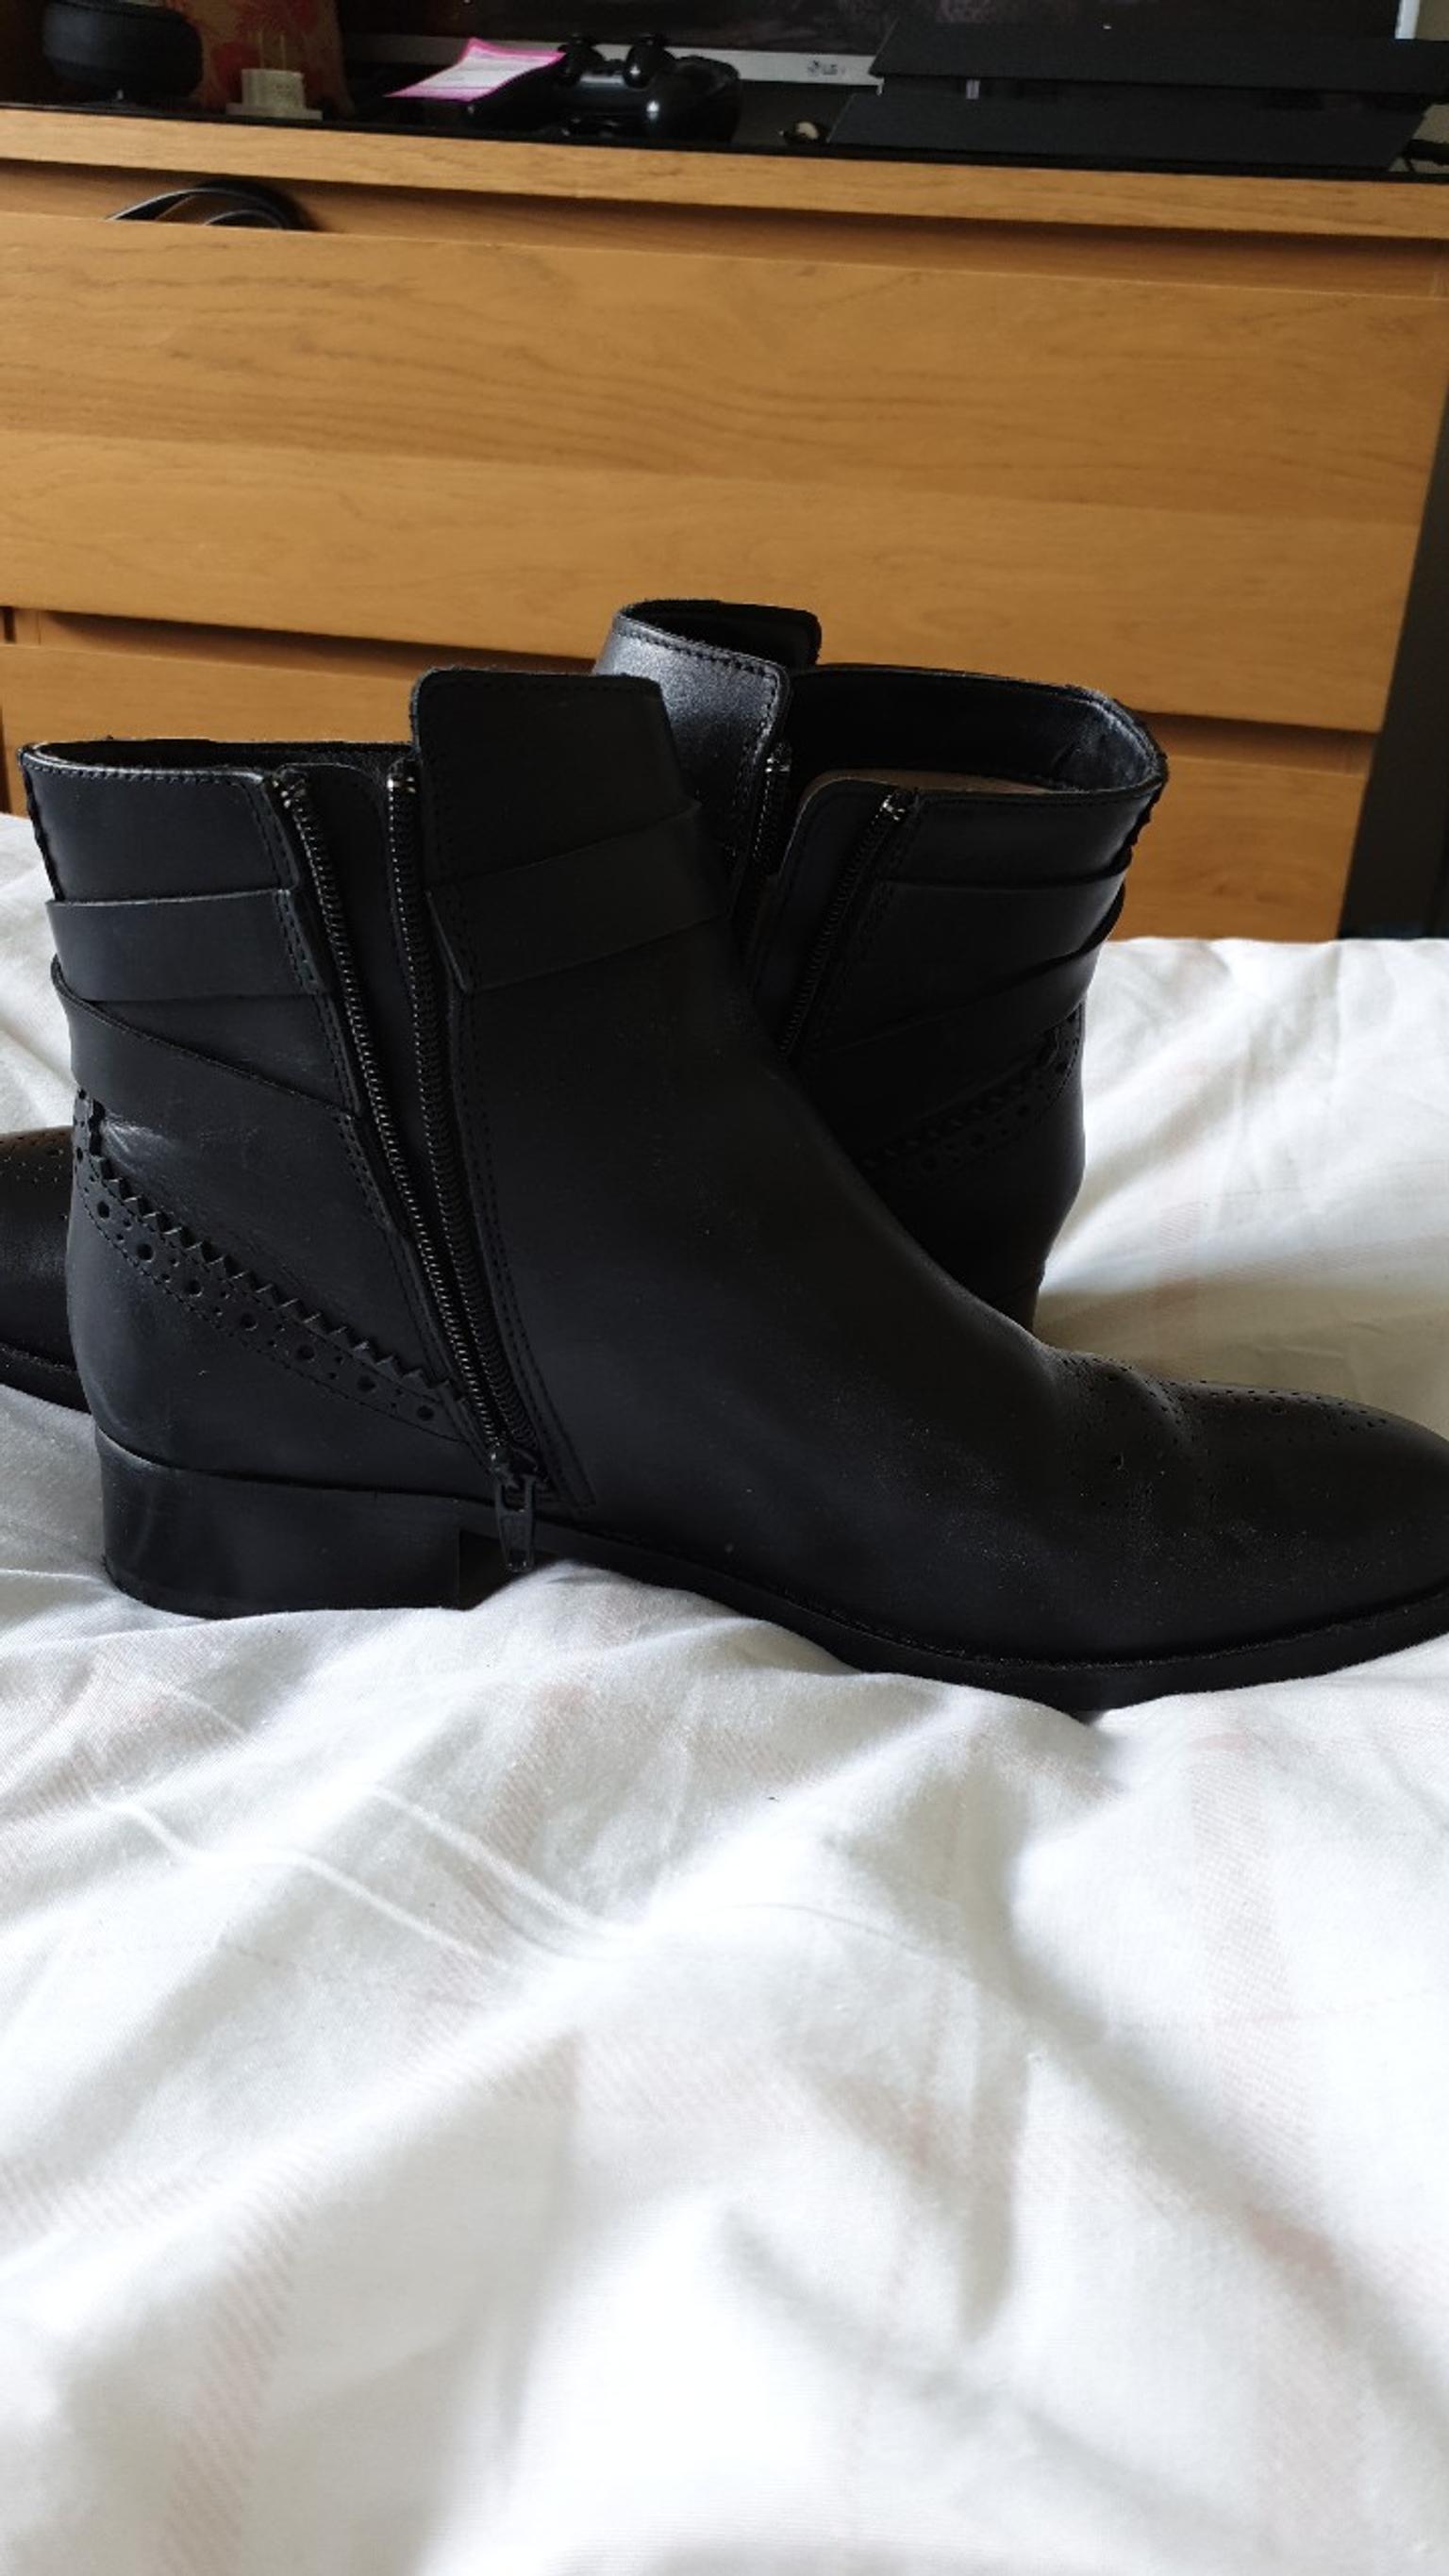 clarks low heel boots